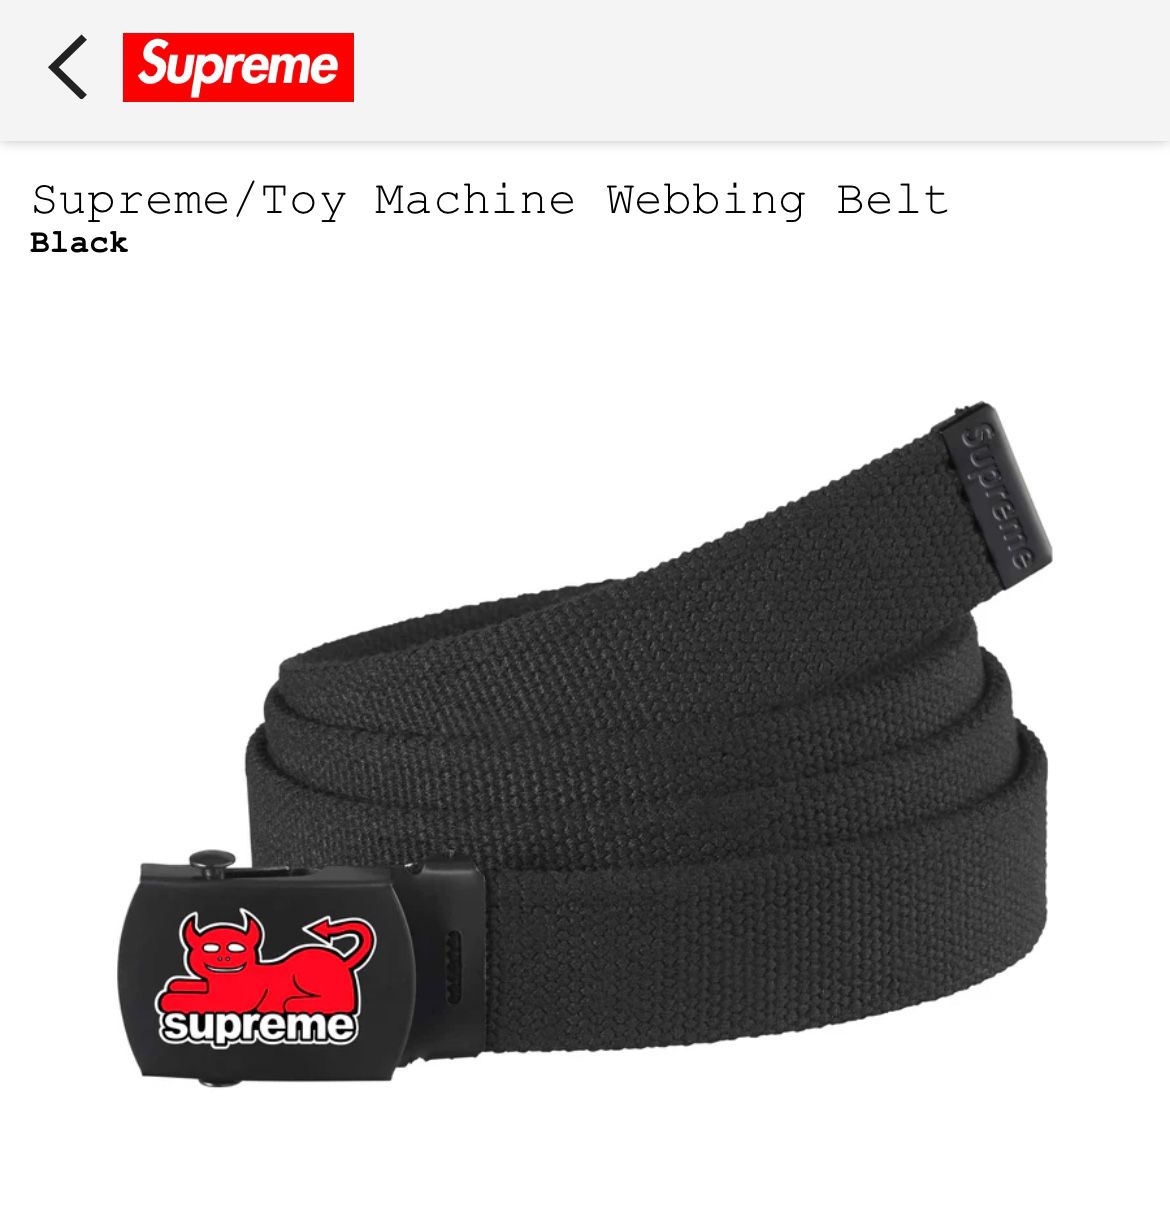 Supreme Toy Machine Webbing Belt Black